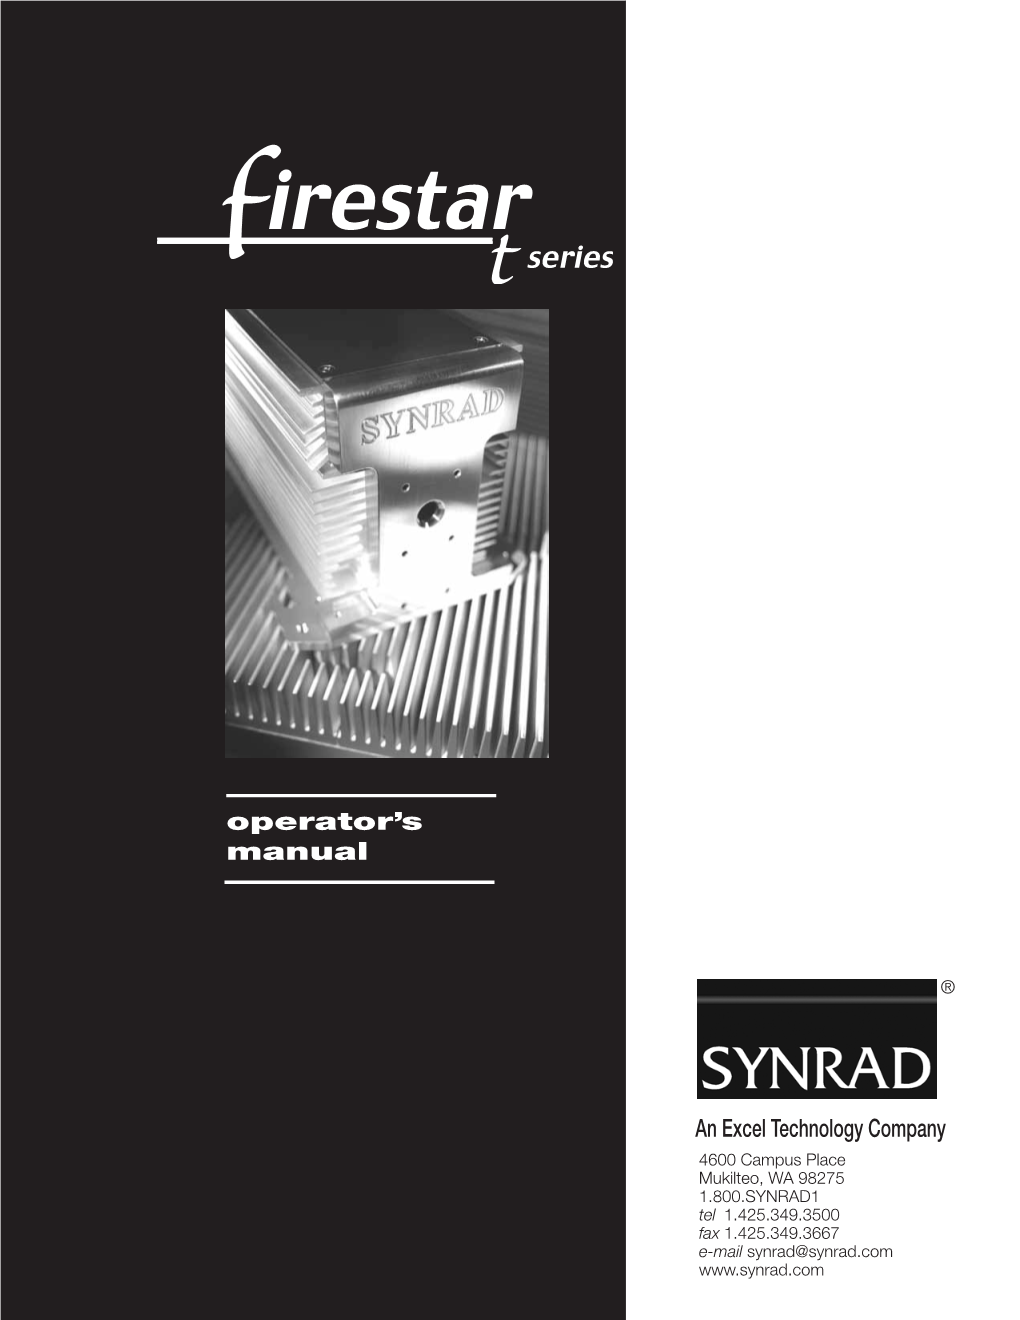 Firestar T-Series Operator's Manual, V1.7